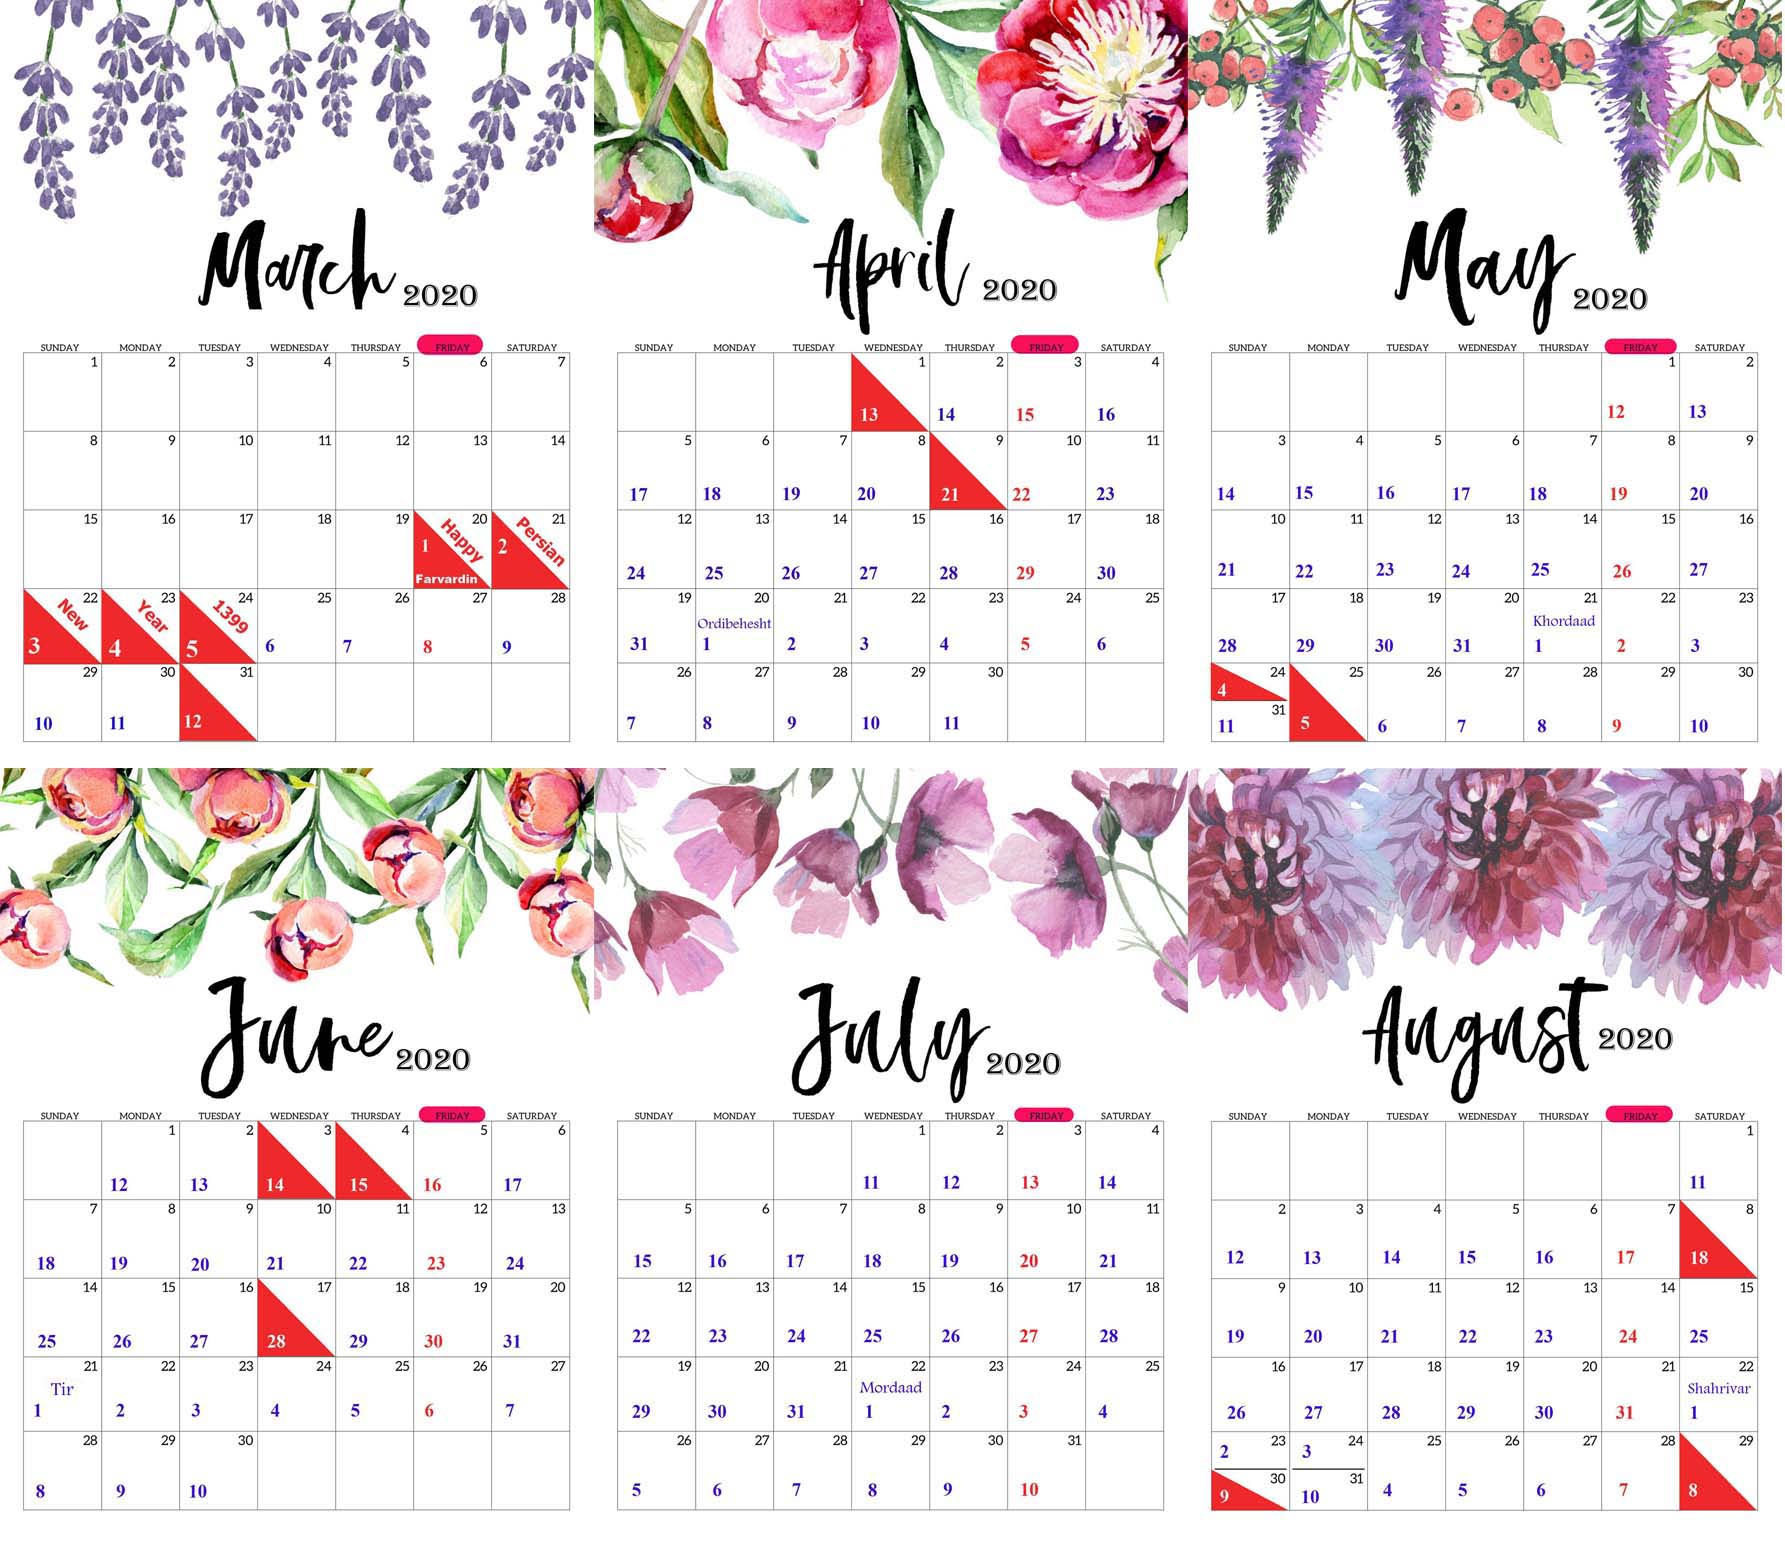 Hijri Calendar Conversion